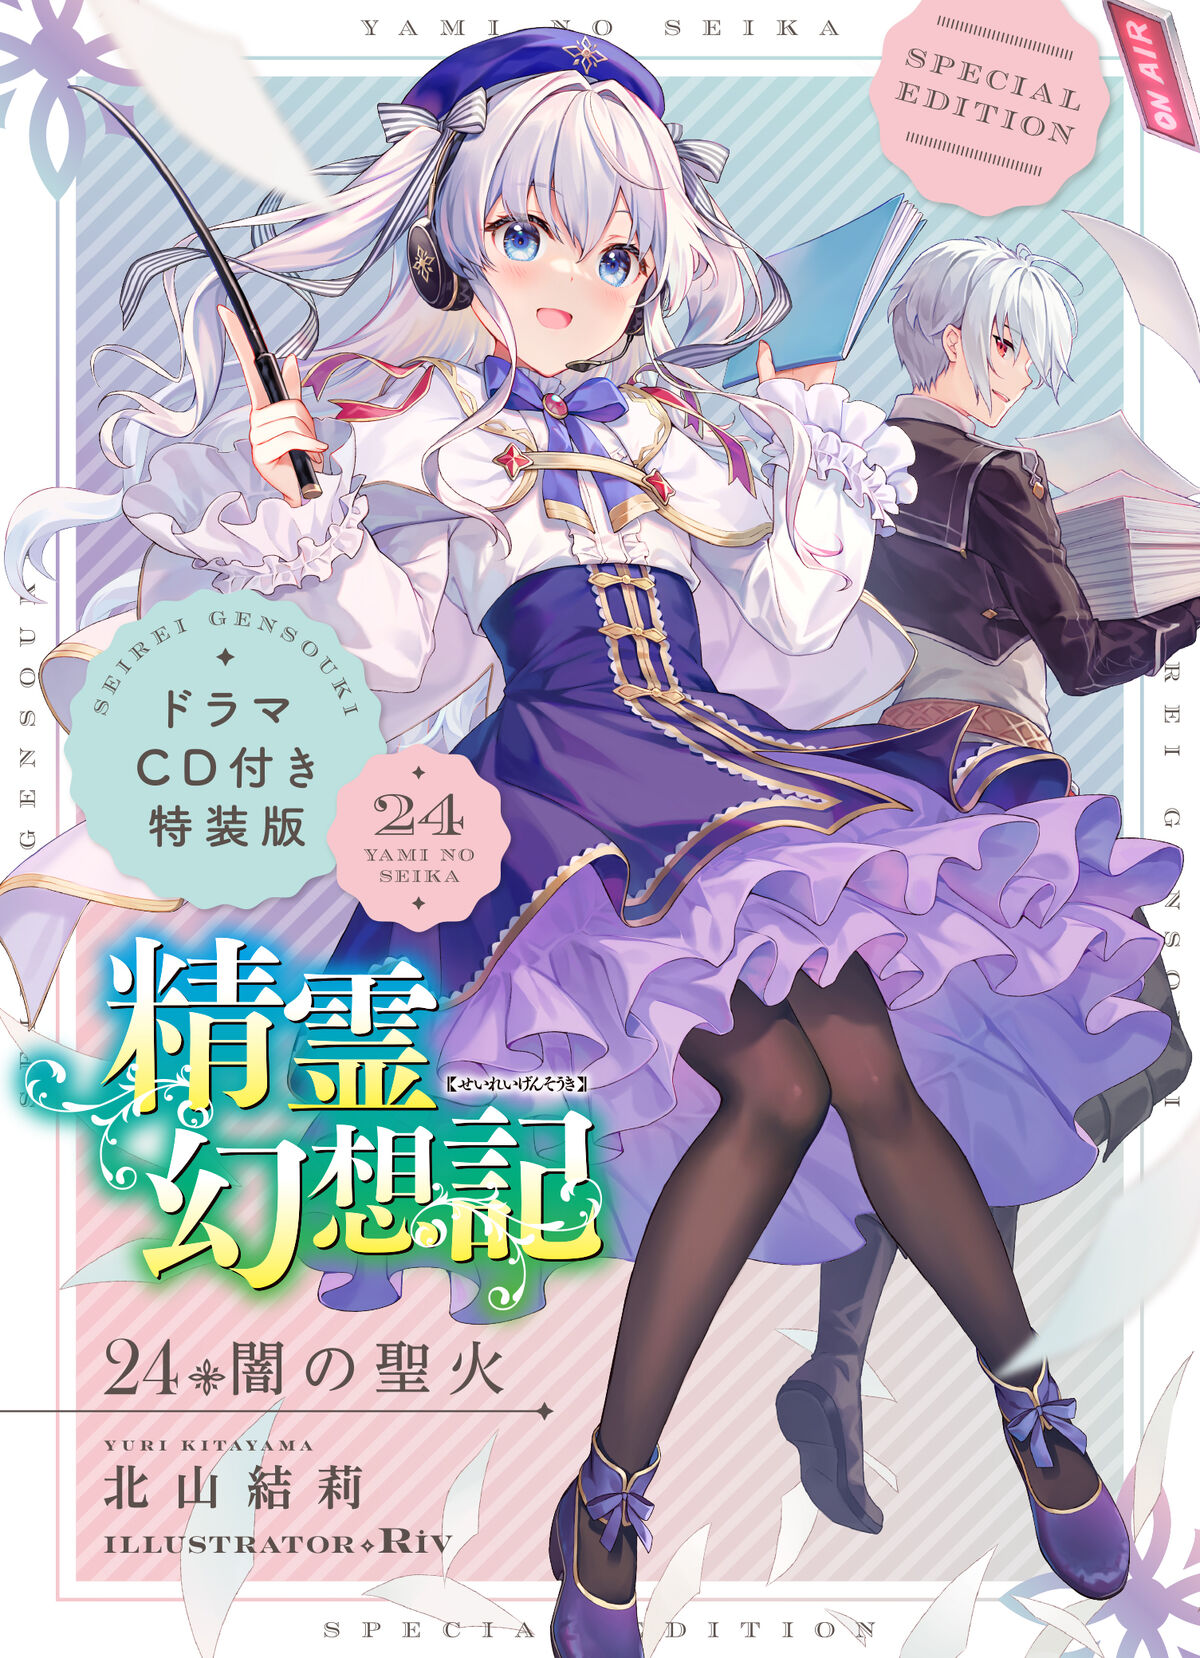 Drama CD] Seirei Gensouki Volume 03 - Anime X Novel